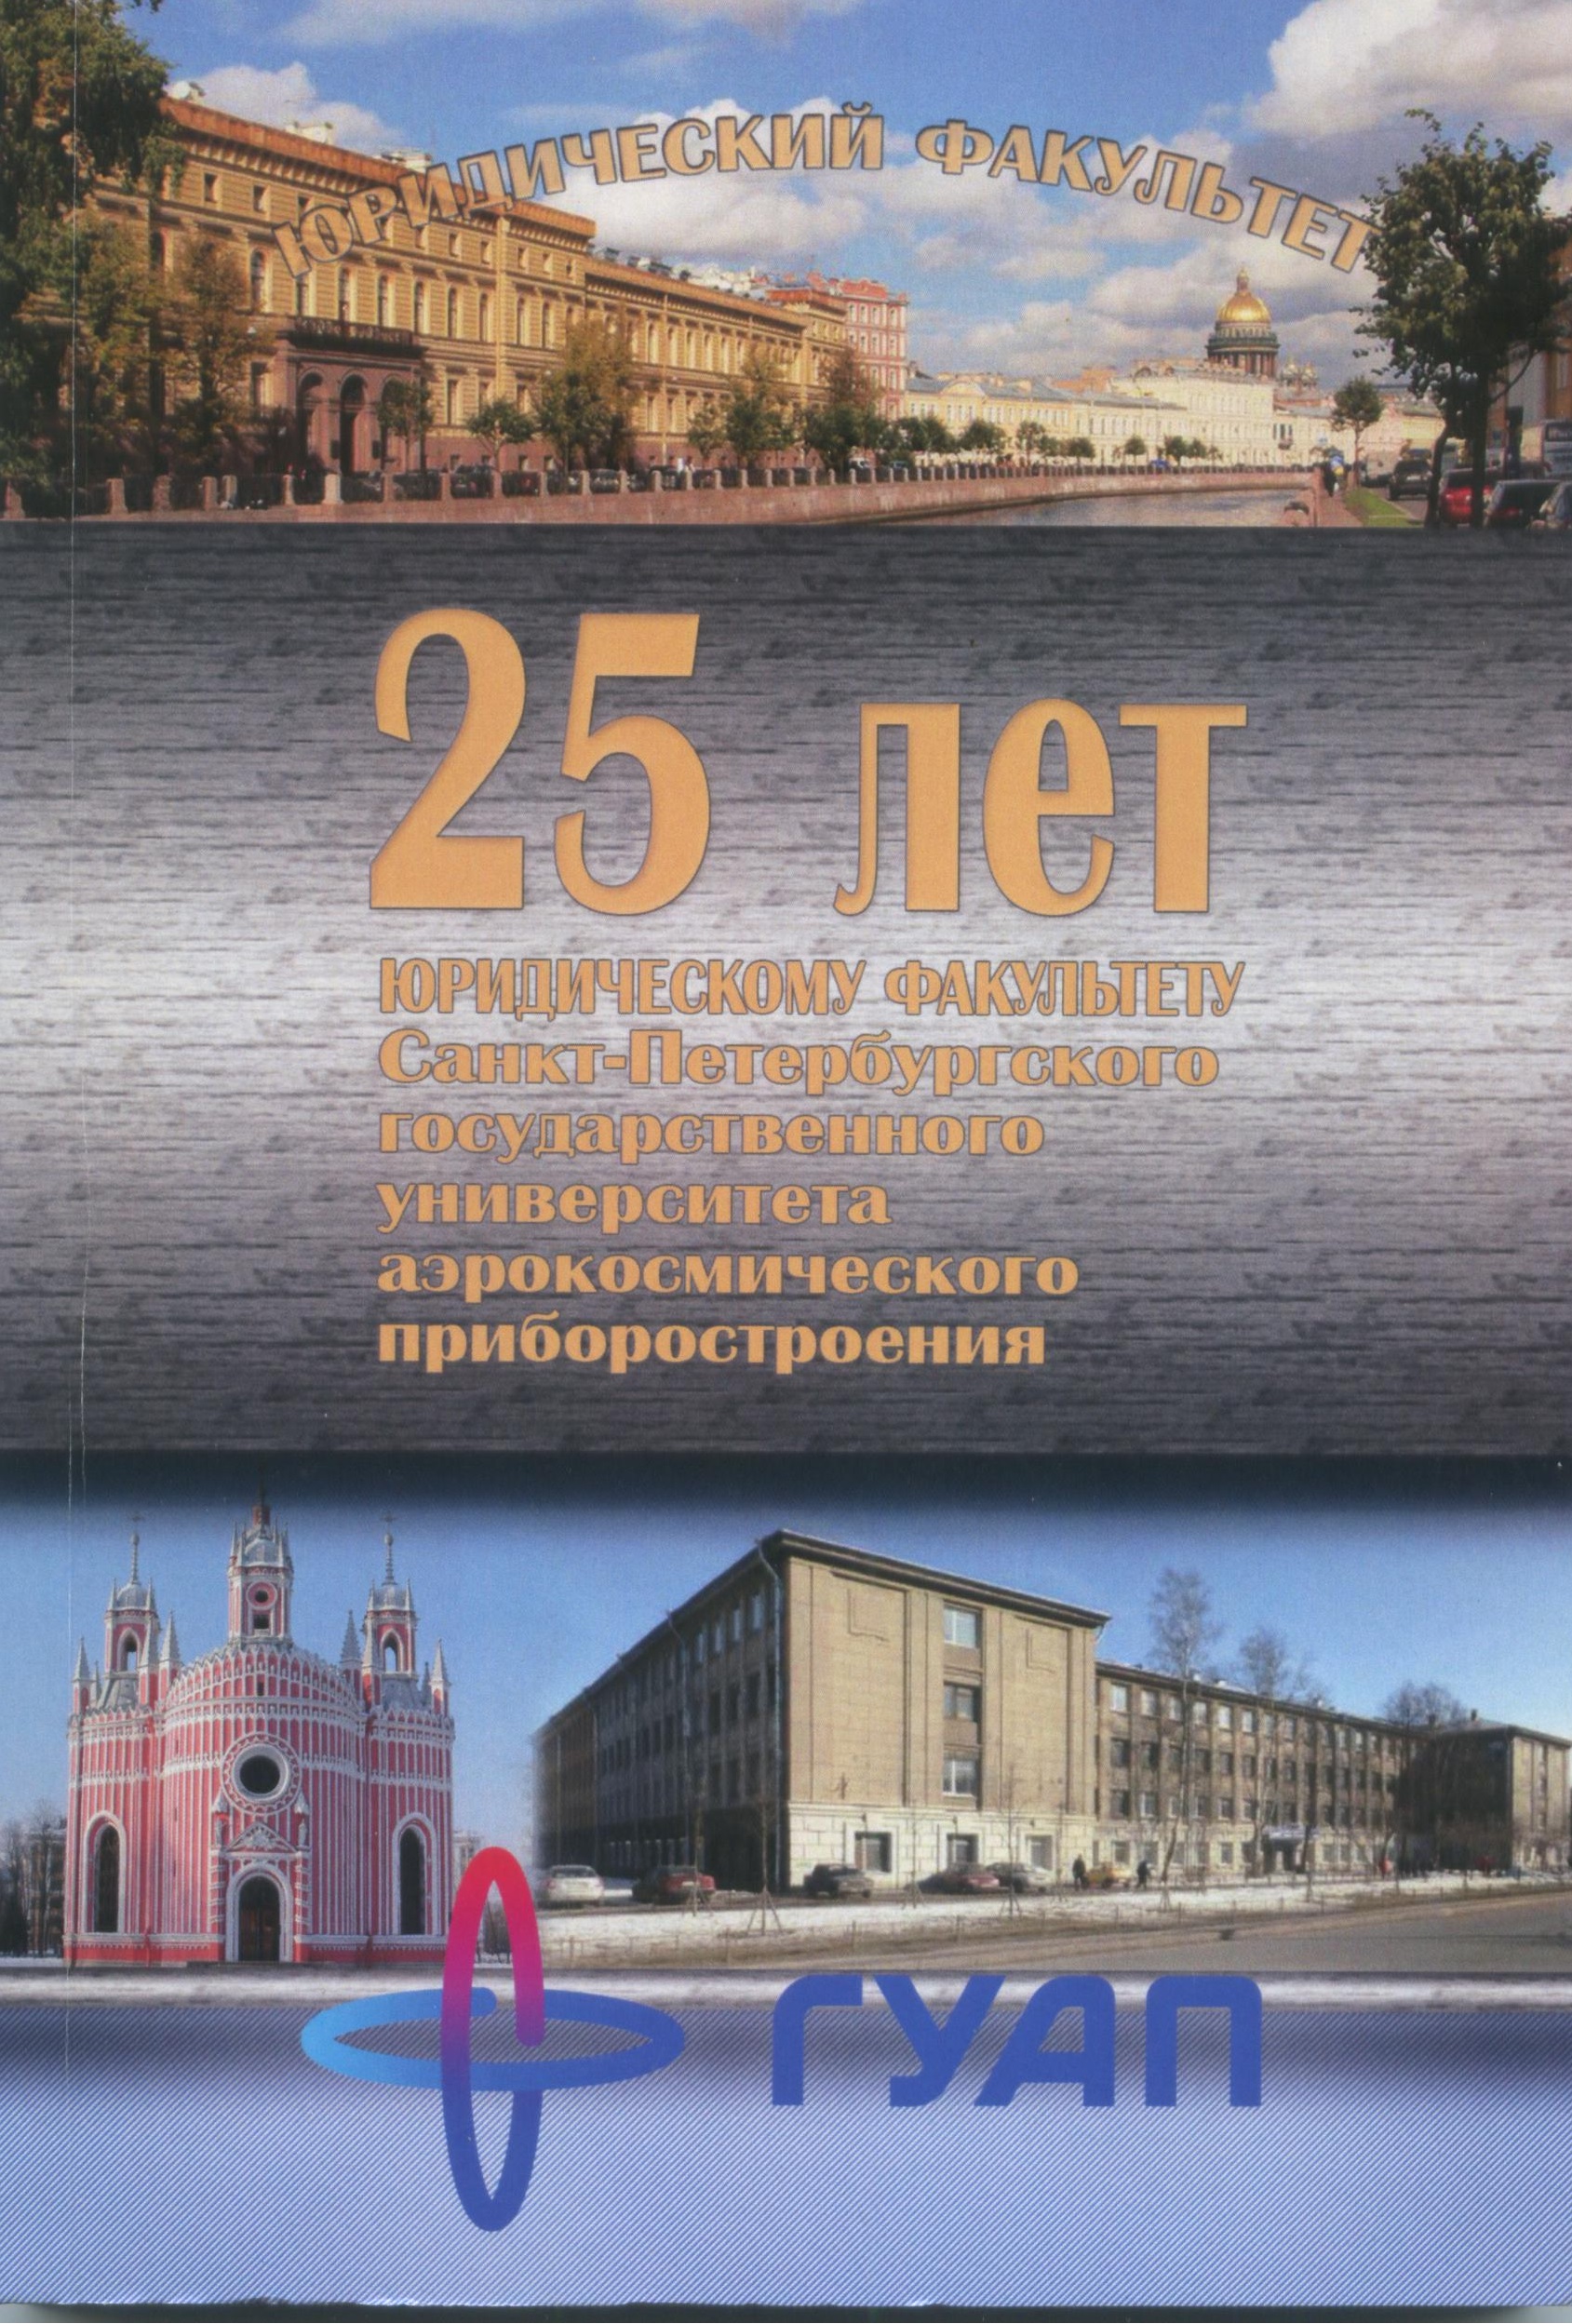 25 лет Юридическому факультету Санкт-Петербургского государственного университета аэрокосмического приборостроения